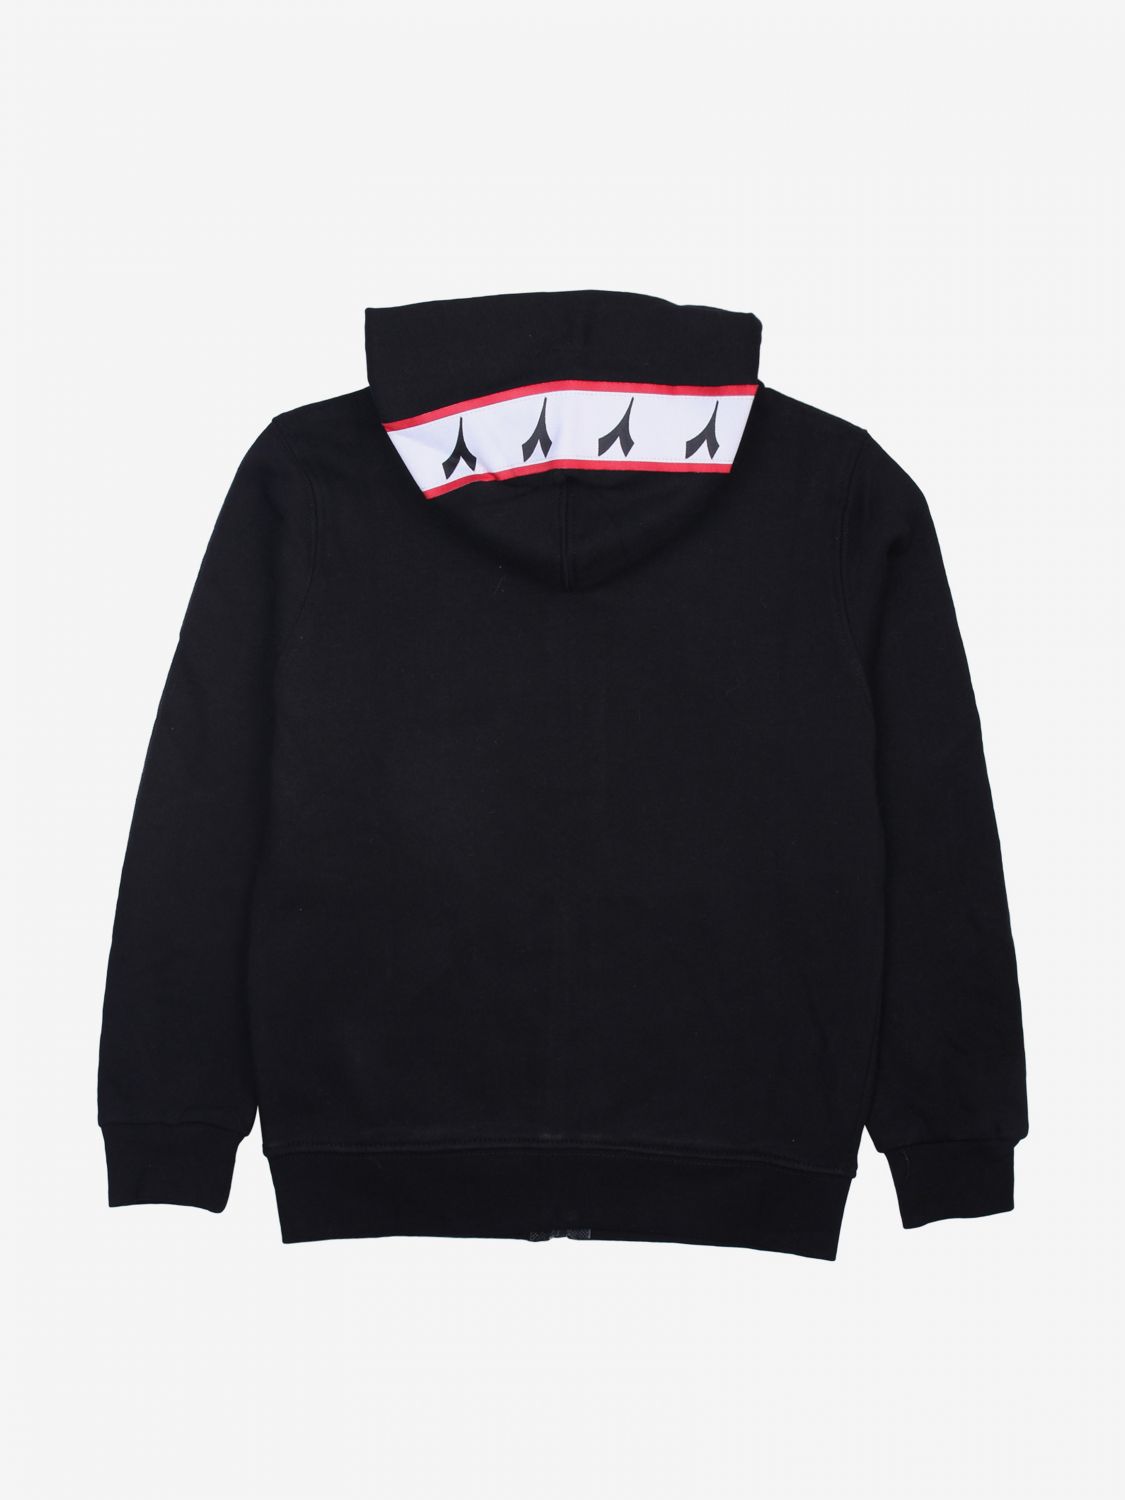 diadora sweater